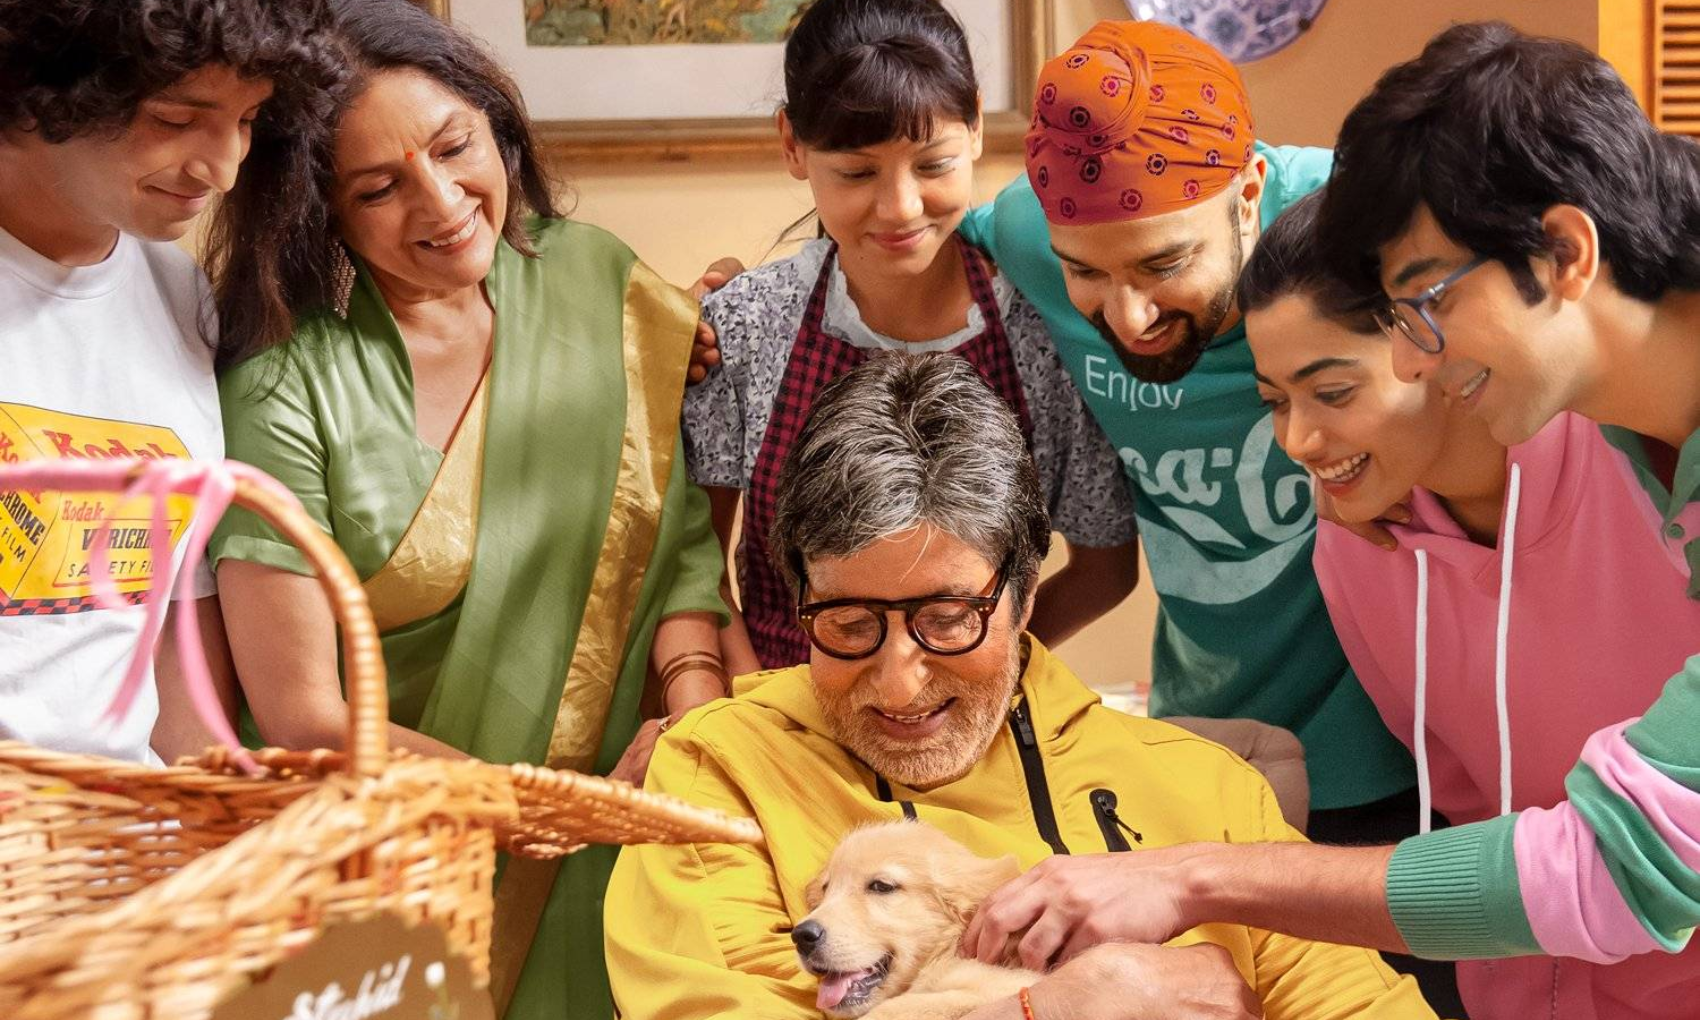 अमिताभ बच्चन और रश्मिका मंदाना की फिल्म ‘Good Bye’ का ट्रेलर आया सामने, पारिवारिक नोकझोक से भरपूर है फिल्म